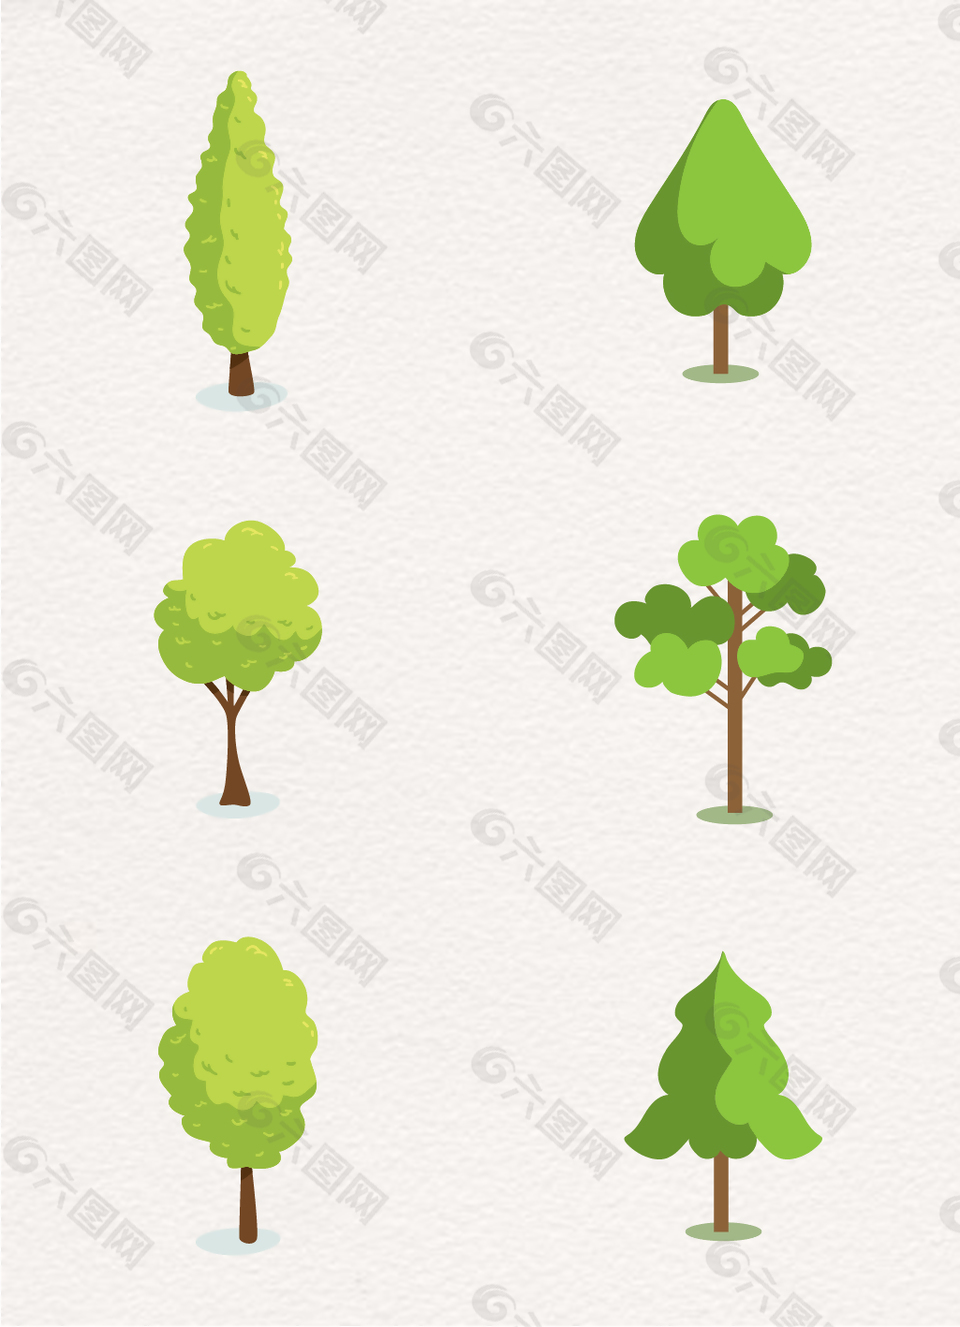 绿色的卡通树木矢量素材